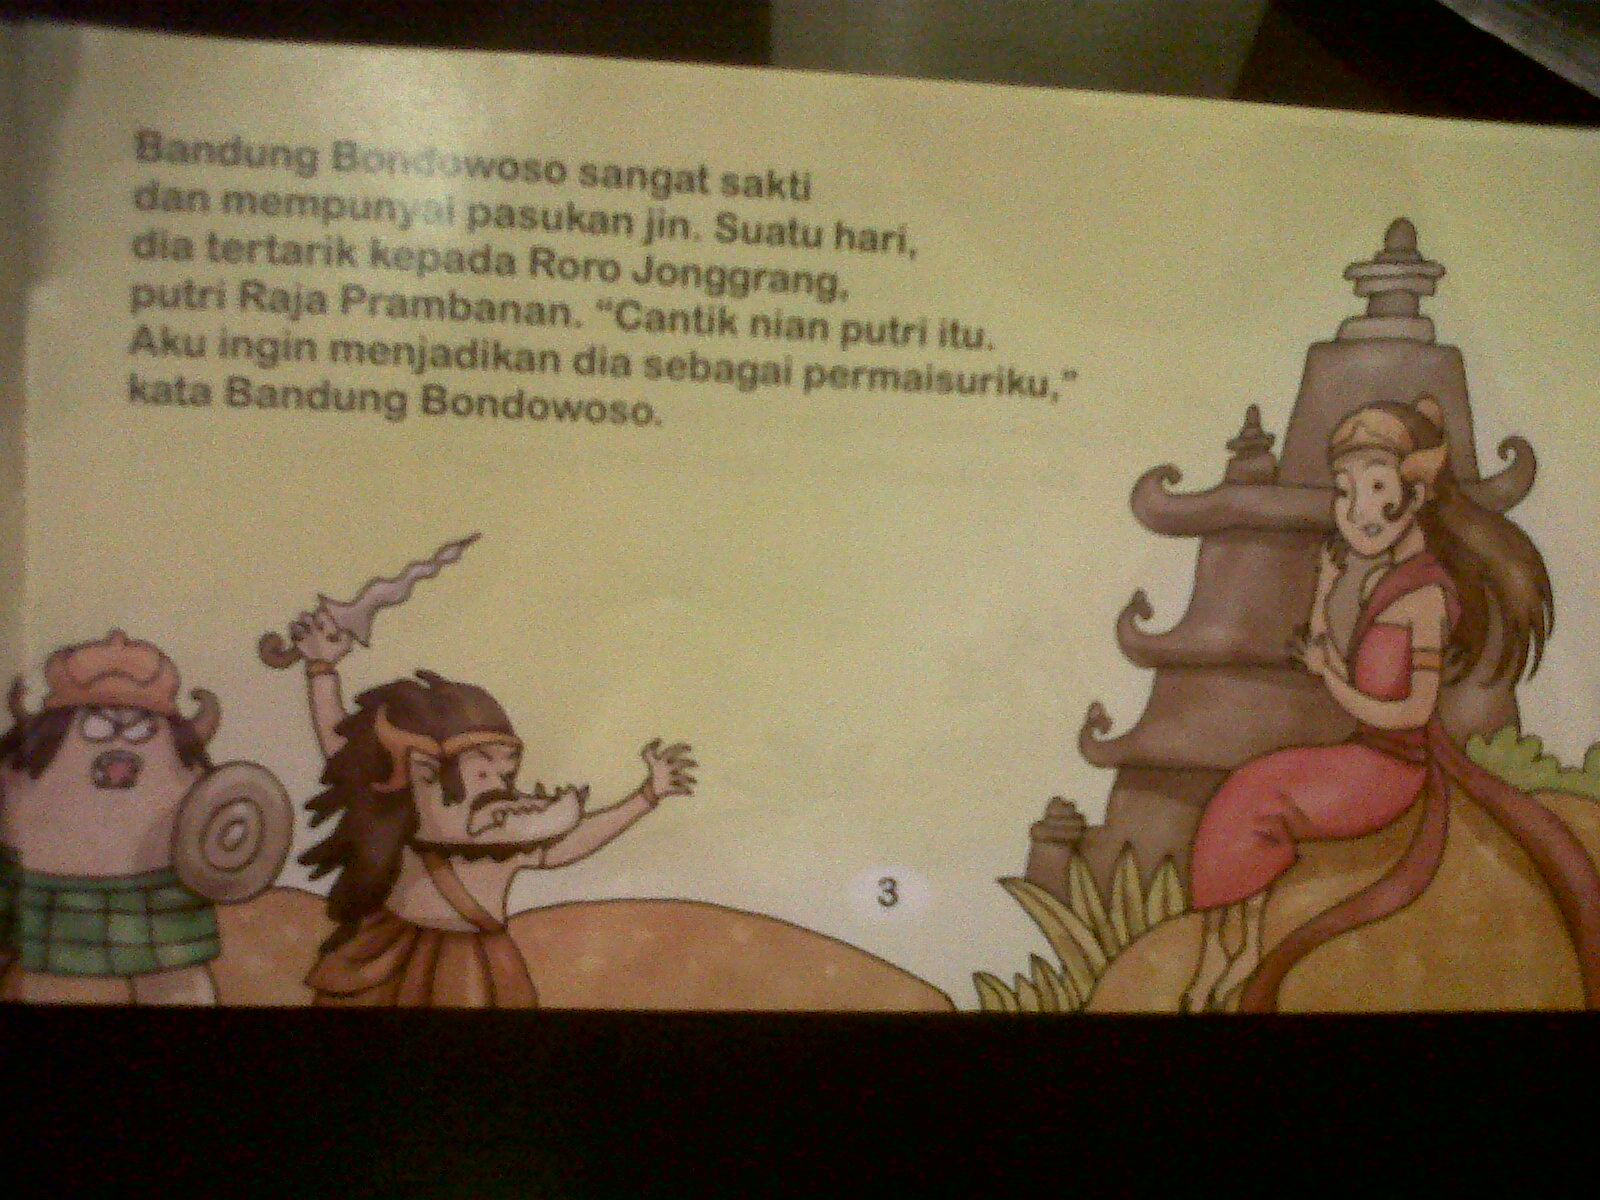 Roro Jonggrang (Serial cerita rakyat Indonesia by 